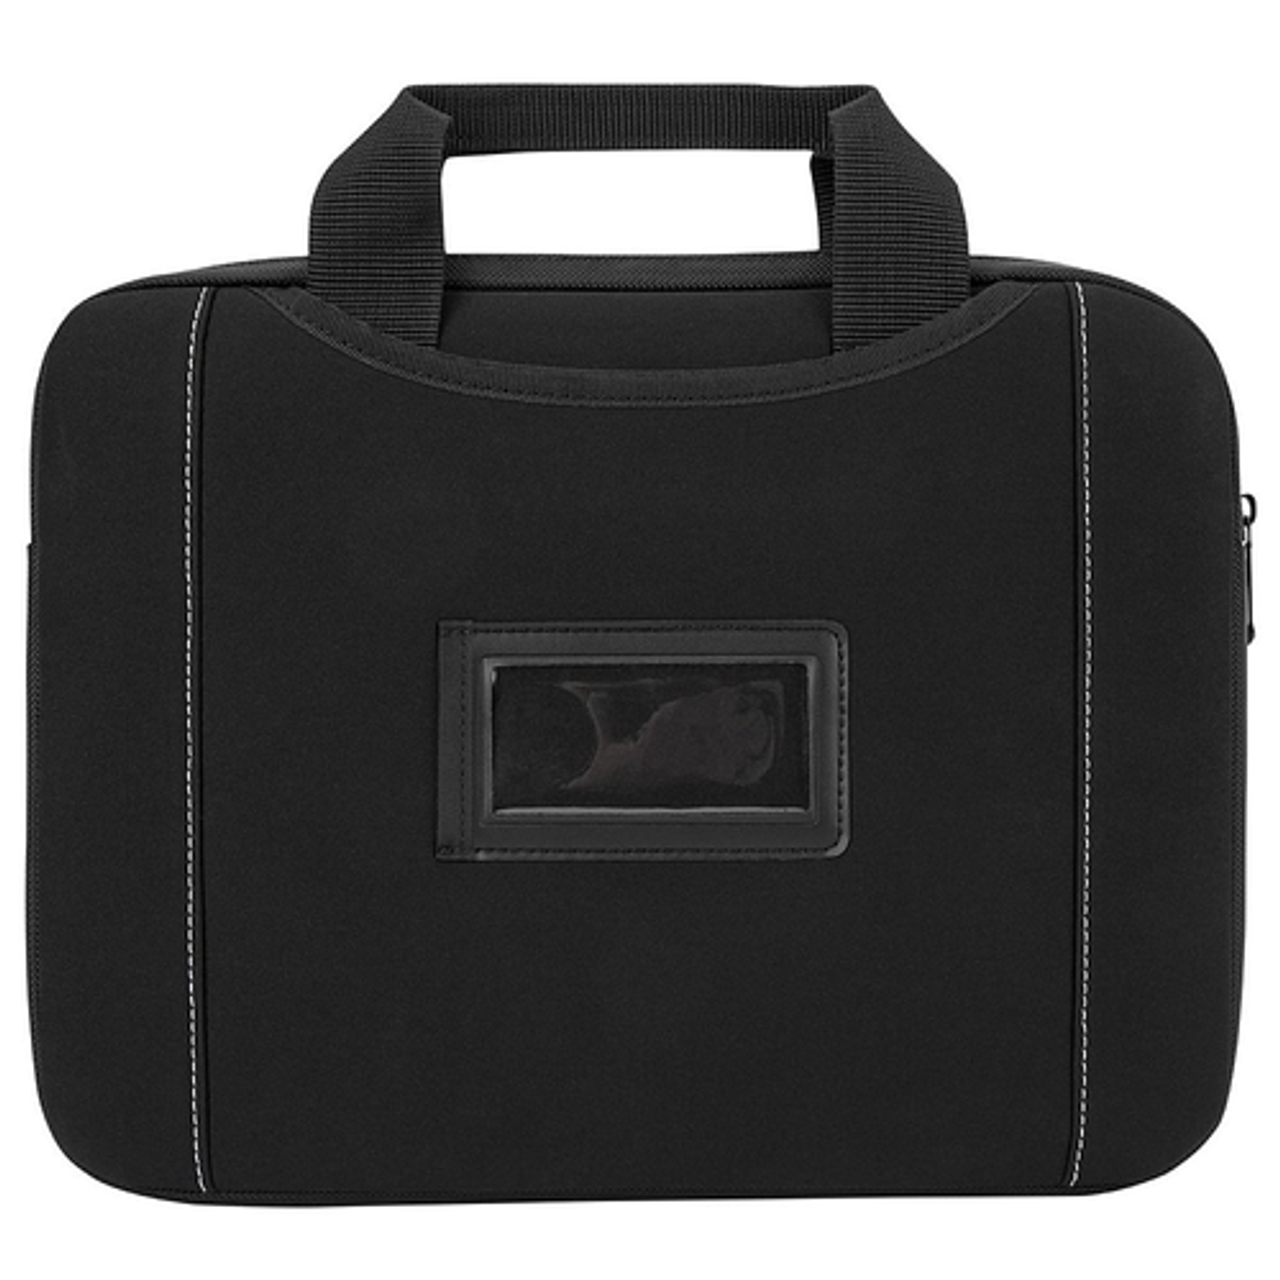 Targus - Slipskin Sleeve for 12" Laptop with Hideaway Handles - Black